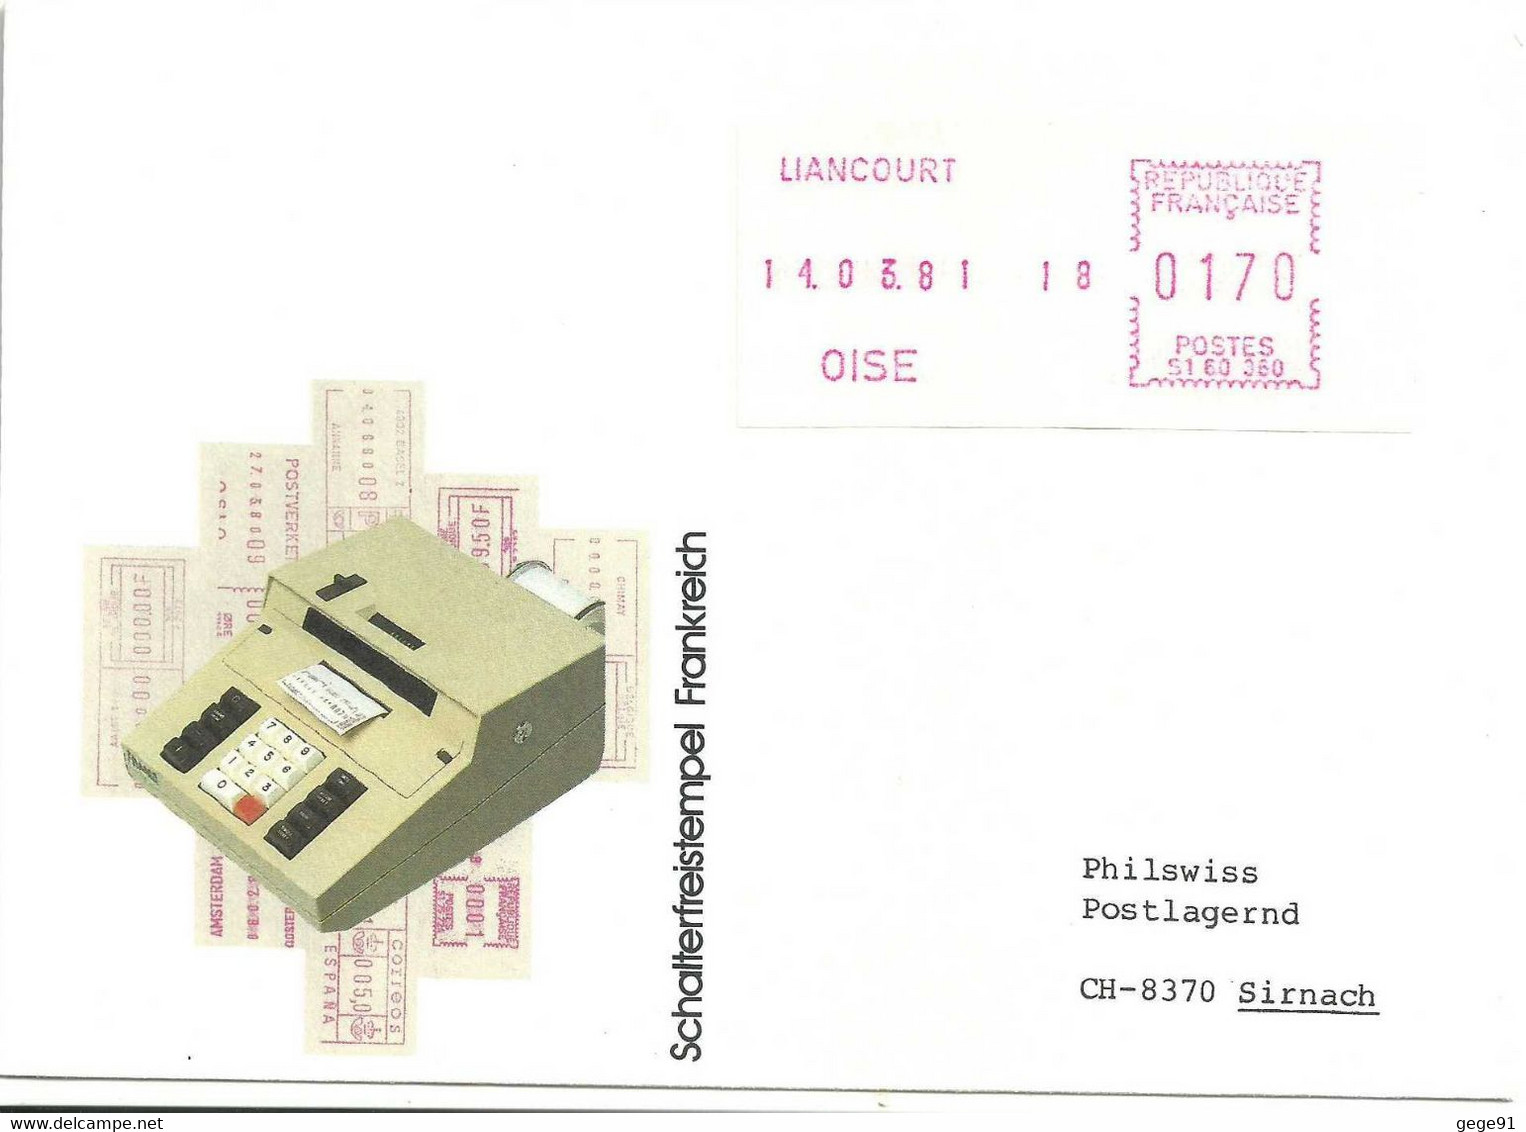 Vignette D'affranchissement De Guichet Satas Frama - Machine De Pré-série - Liancourt - Enveloppe Entière - 1969 Montgeron – White Paper – Frama/Satas